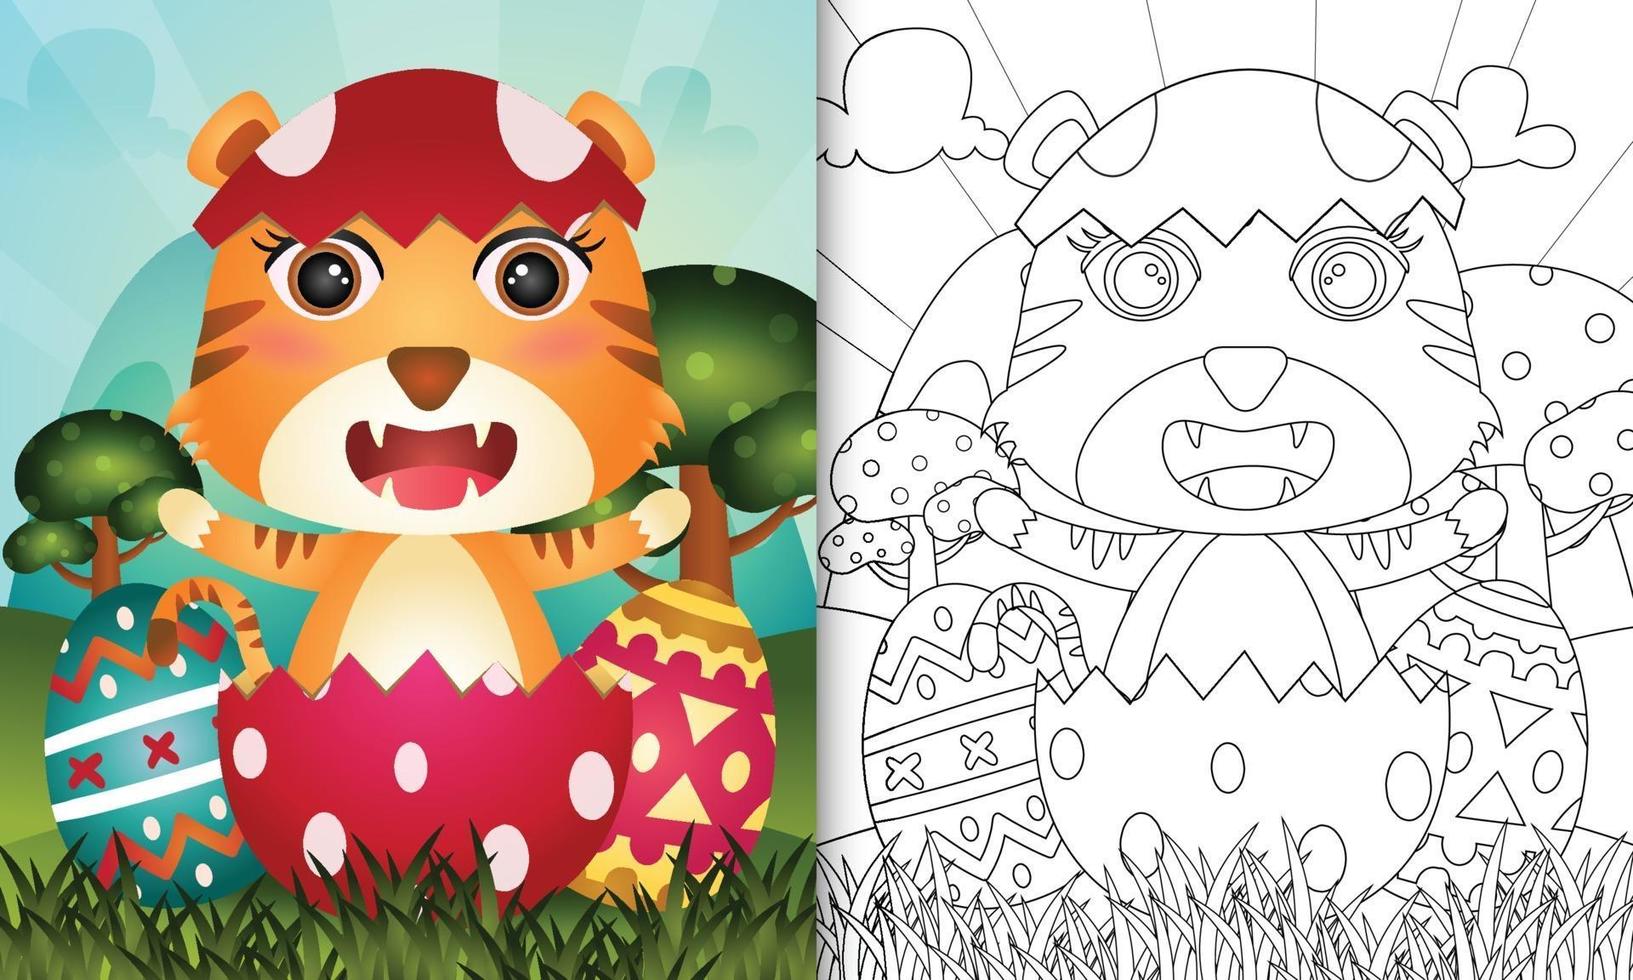 livro de colorir para crianças com tema feliz dia de Páscoa com ilustração de um tigre fofo no ovo vetor